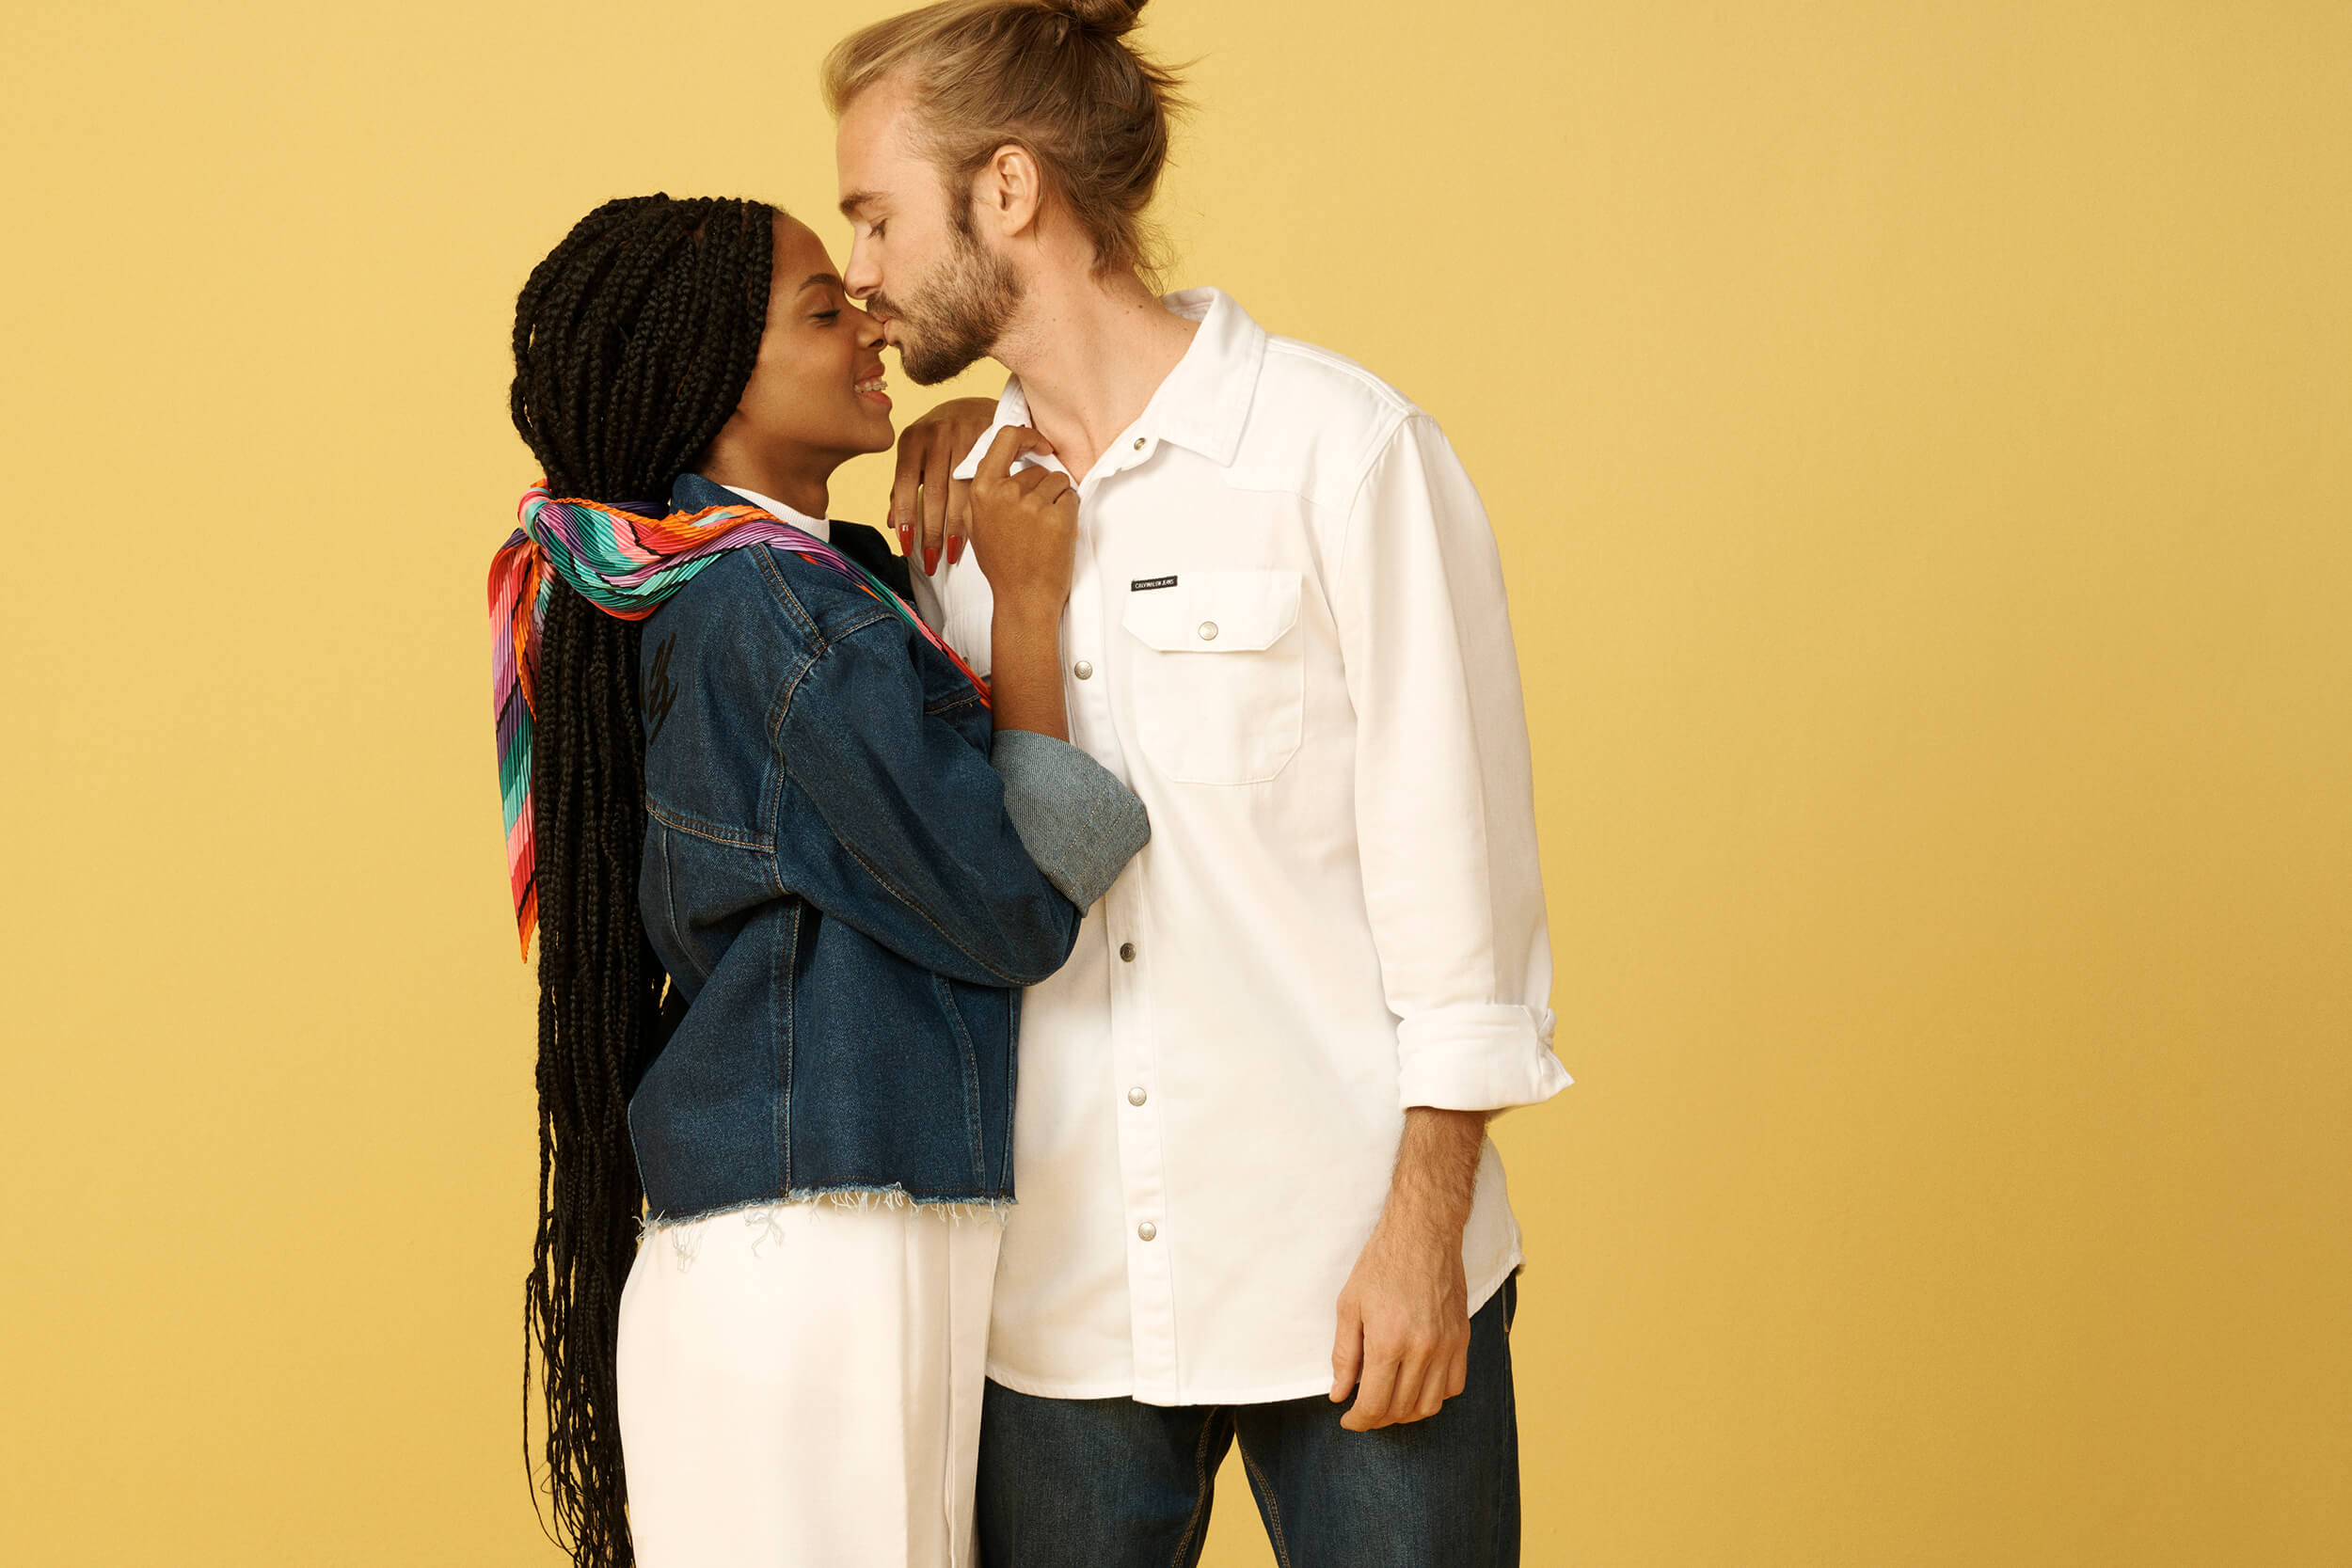 Dafiti lança campanha de dia dos namorados inspirada nos pequenos gestos do cotidiano de um casal